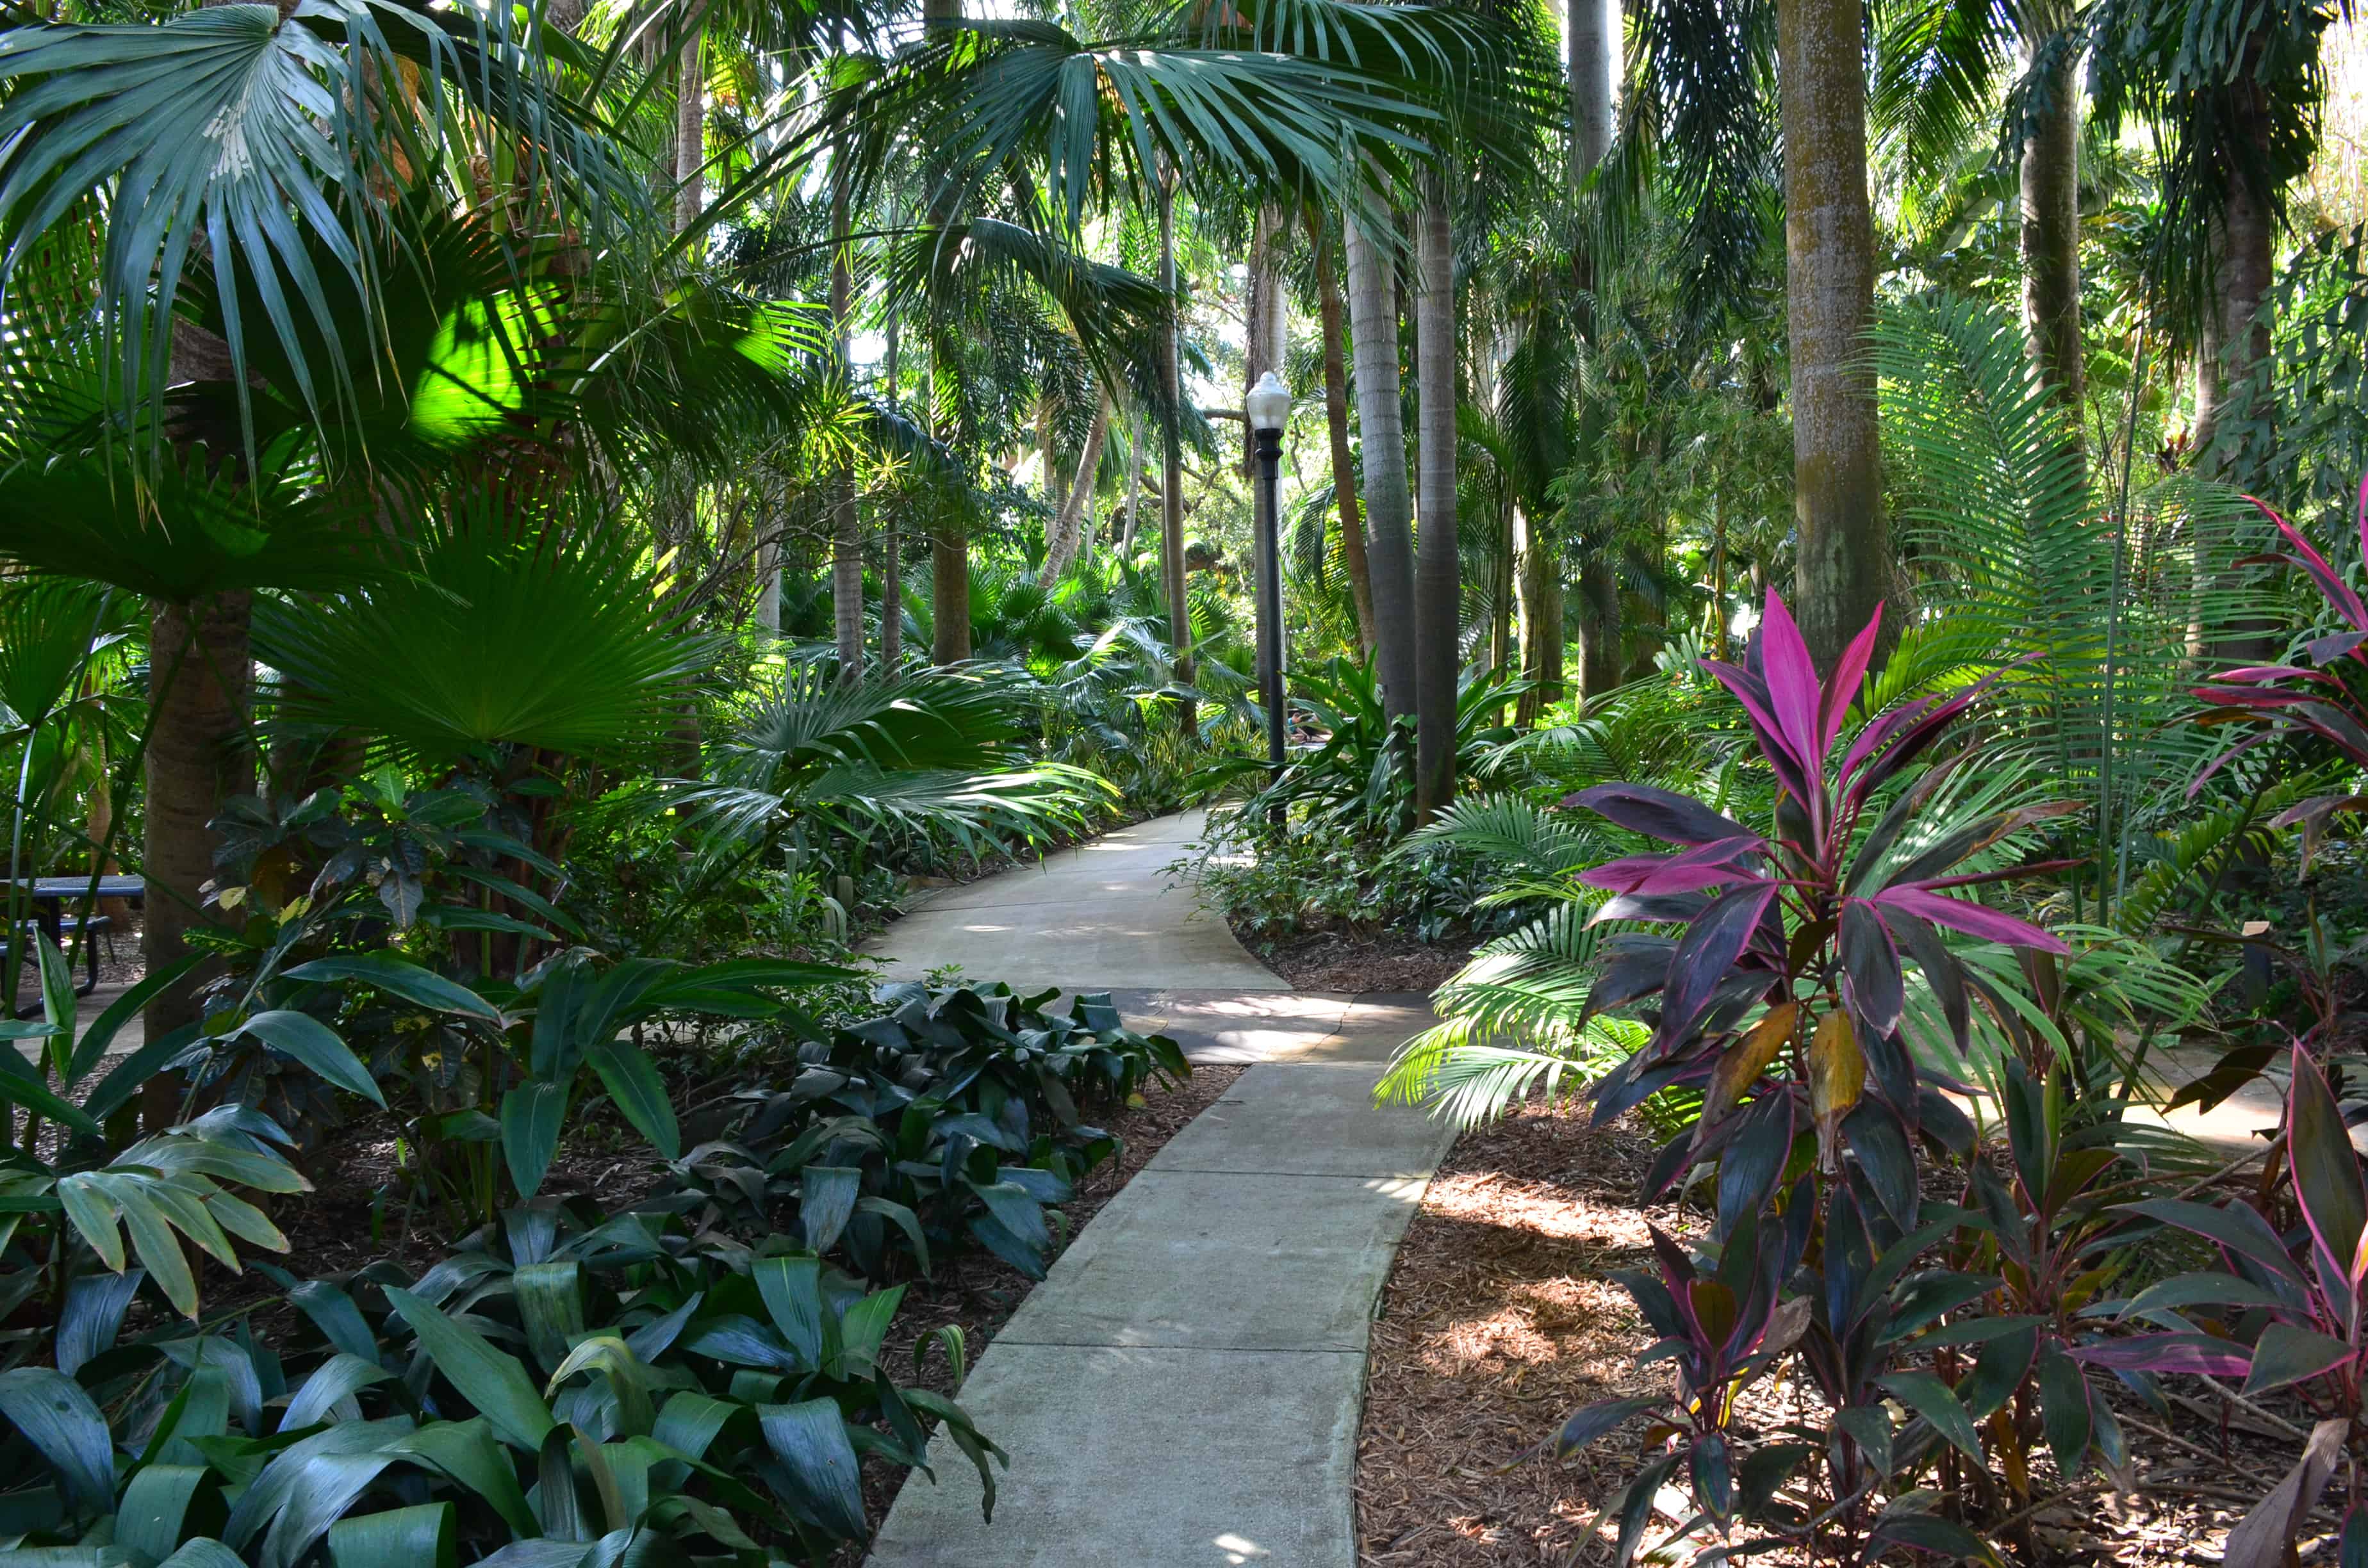 A path through the Sunken Gardens in St. Petersburg, Florida